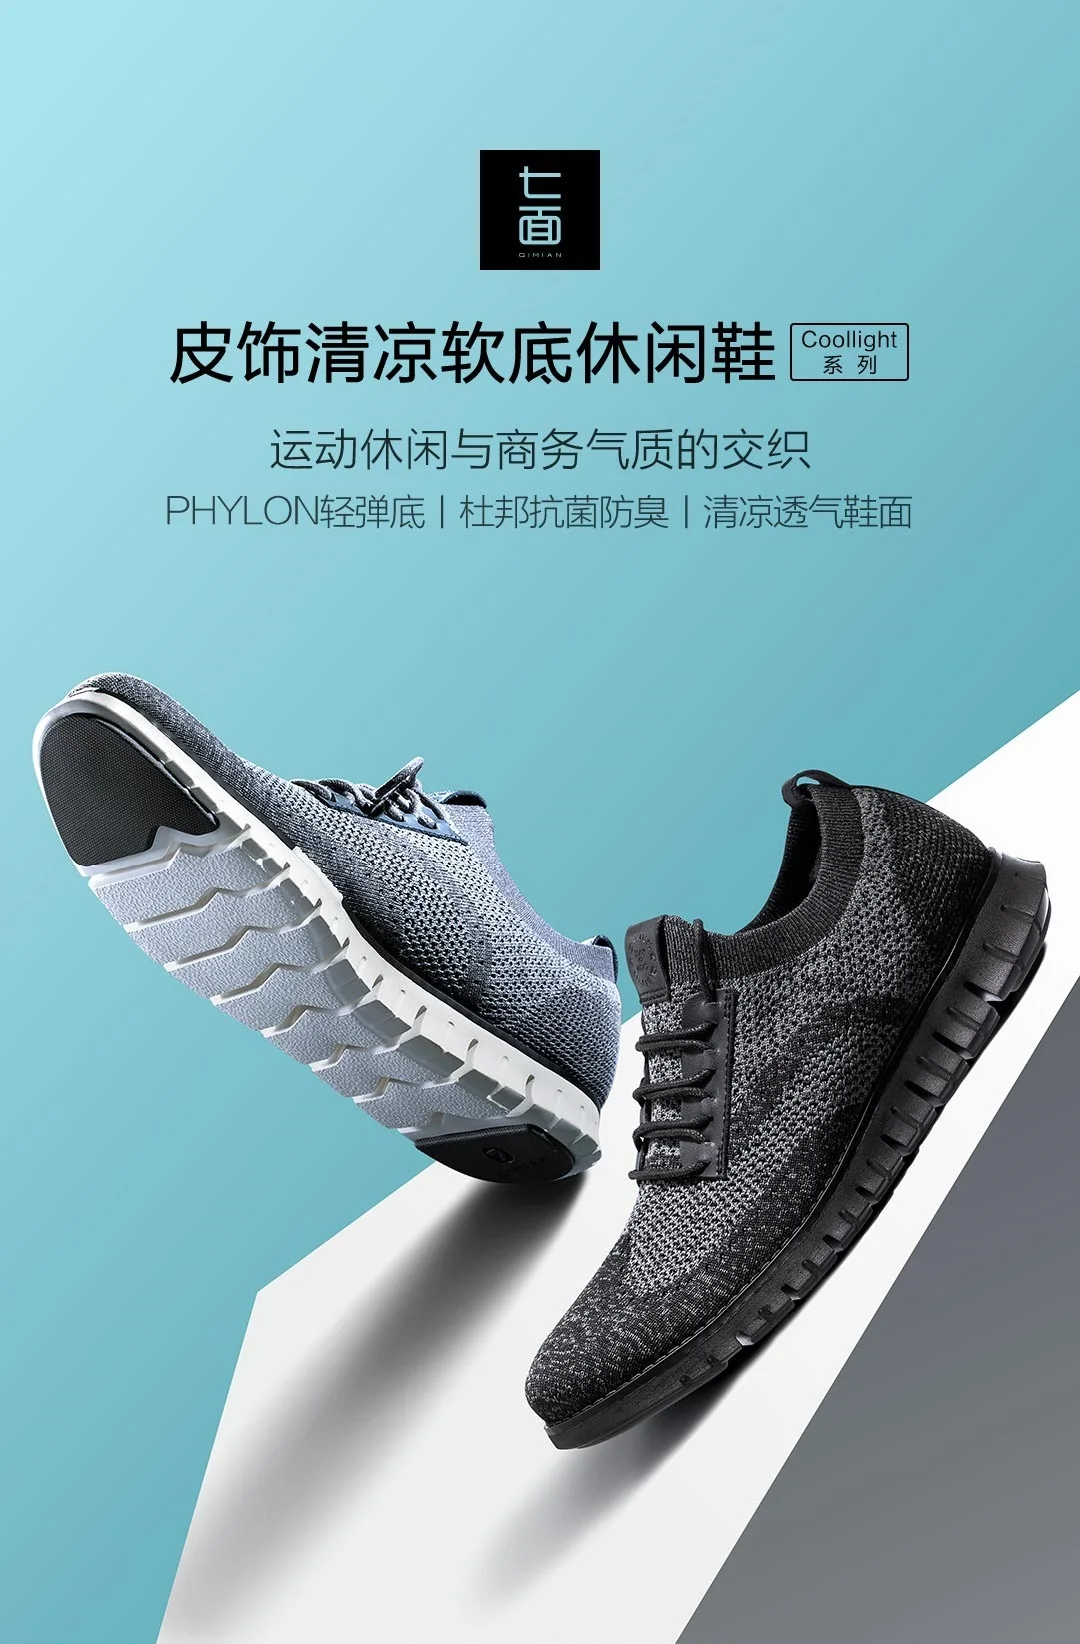 Xiaomi оригинальная спортивная обувь серии Coollinght, деловая мужская обувь с мягкой подошвой, повседневная обувь, Прямая поставка